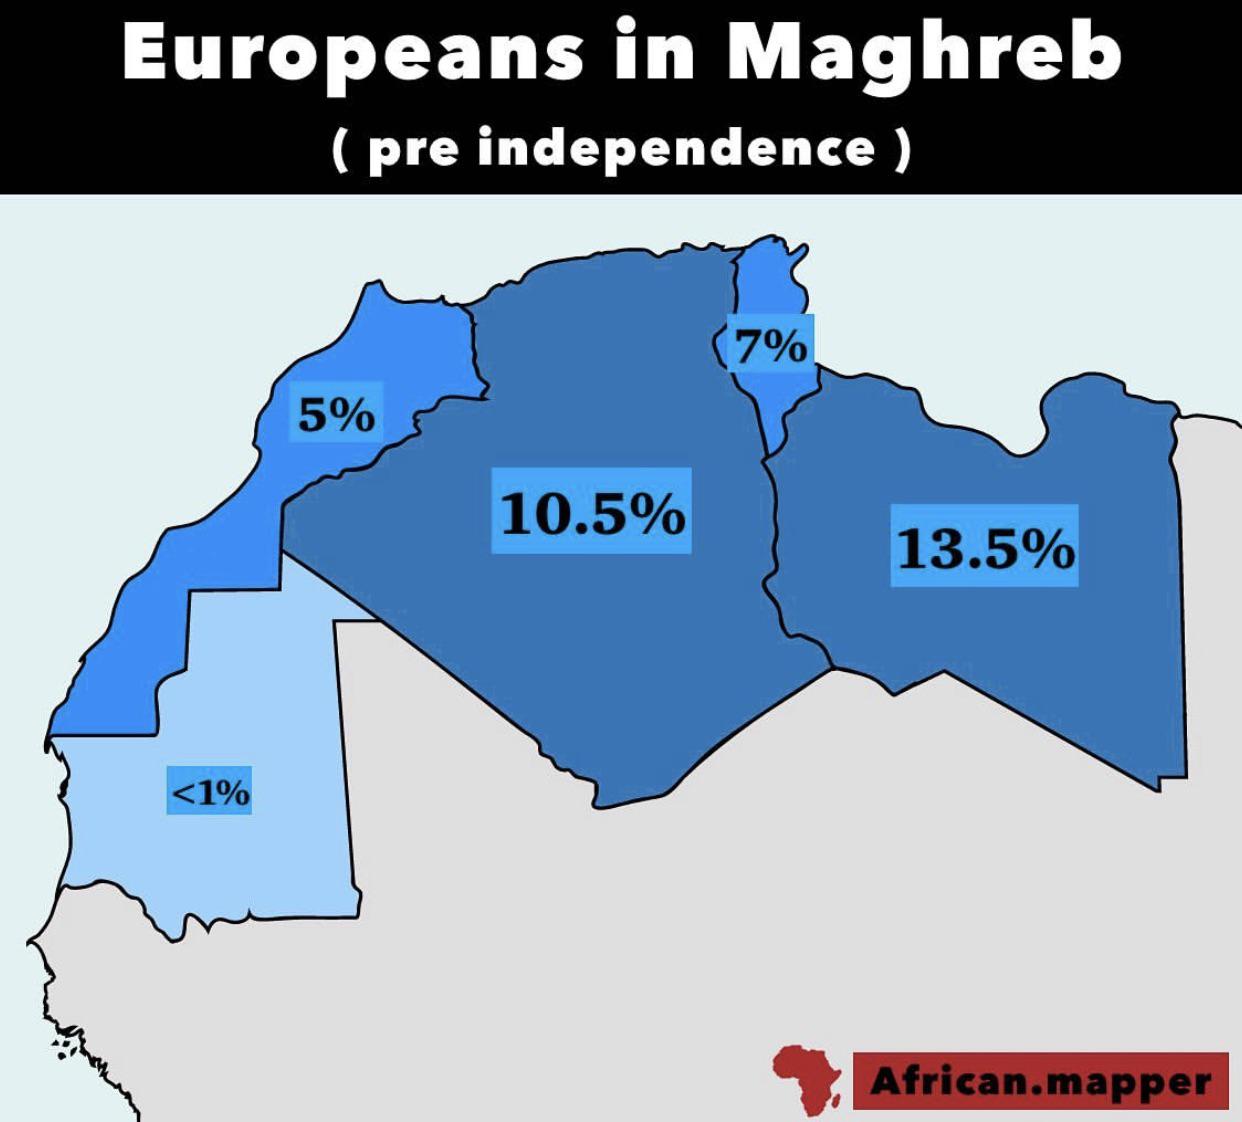 Odsetek Europejczyków w Maghrebie przed uzyskaniem niepodległości